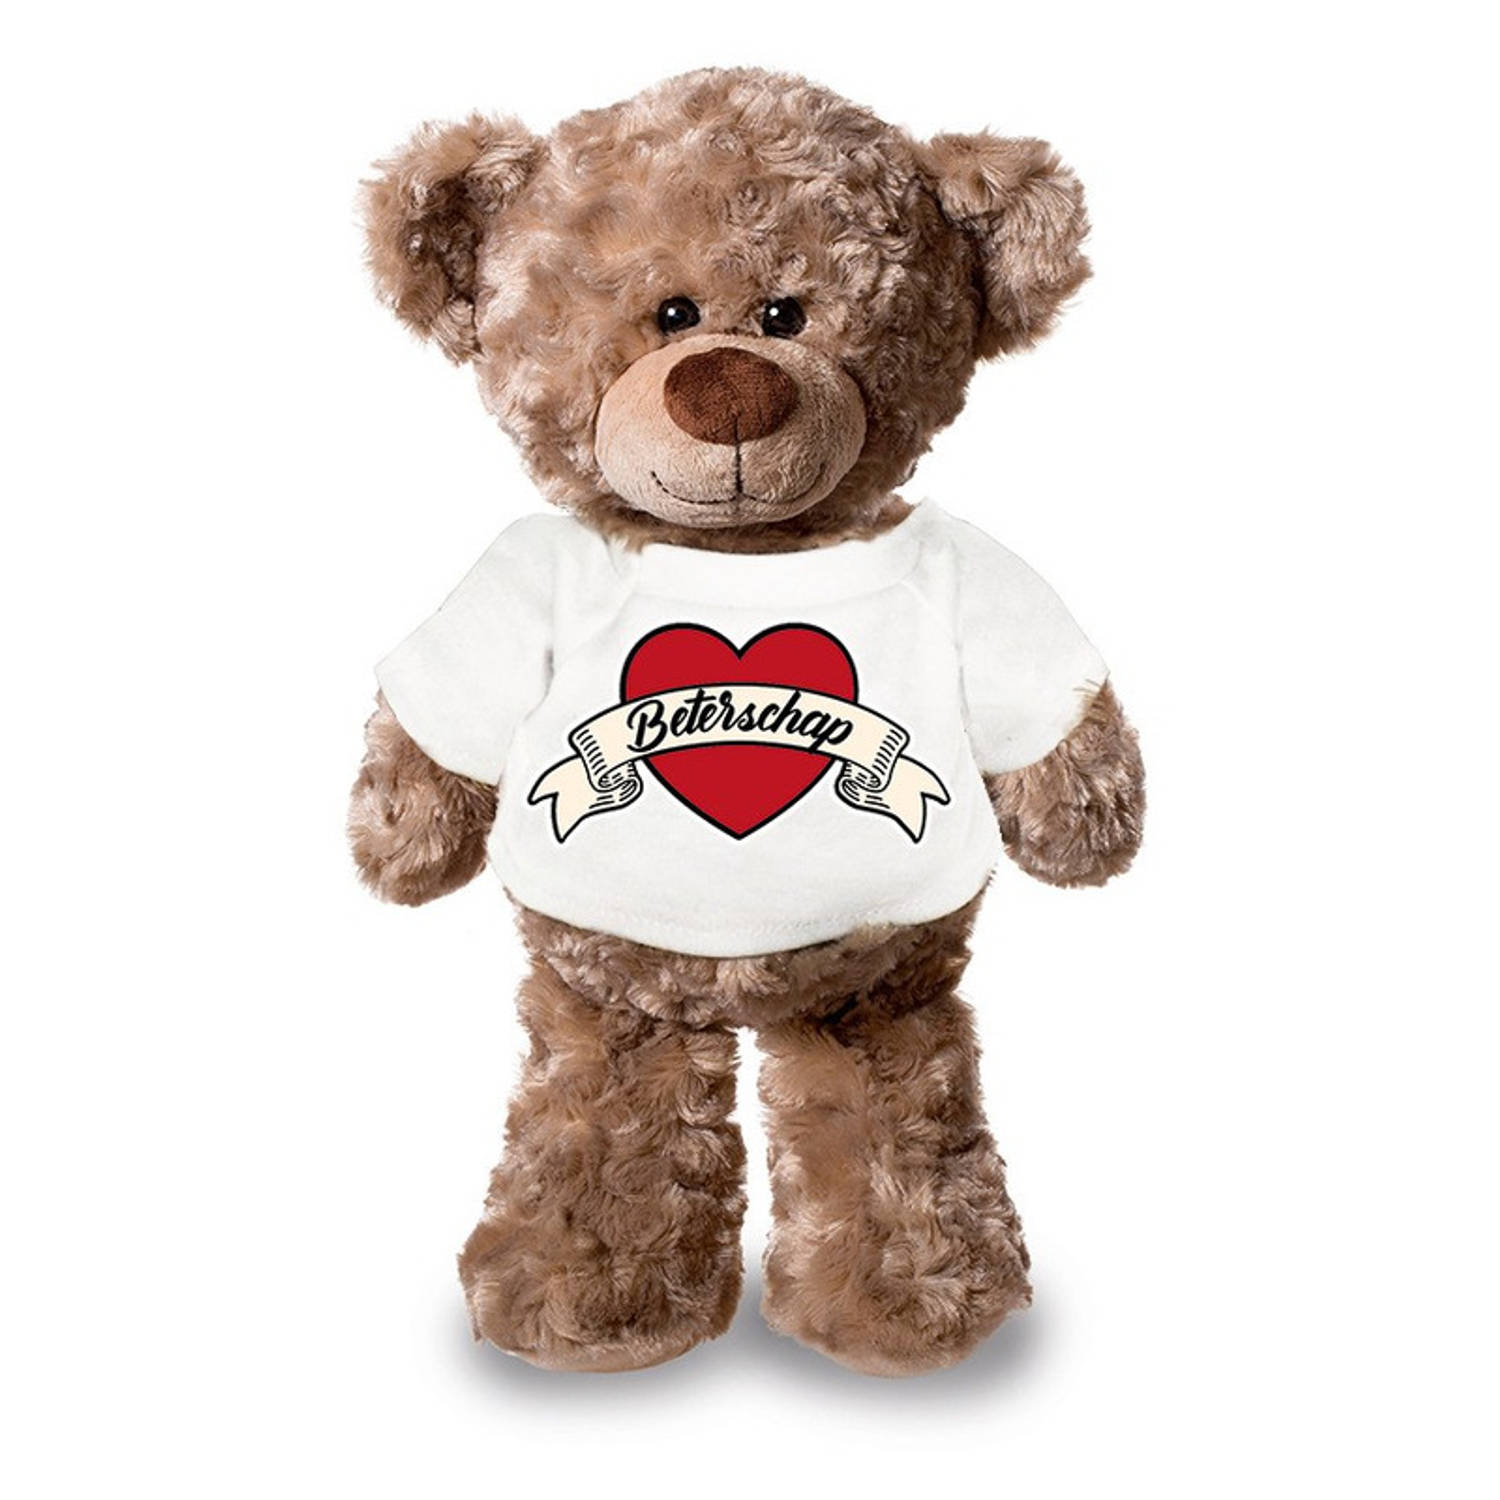 Beterschap pluche teddybeer knuffel 24 cm met wit t-shirt beterschap-cadeau knuffelbeer